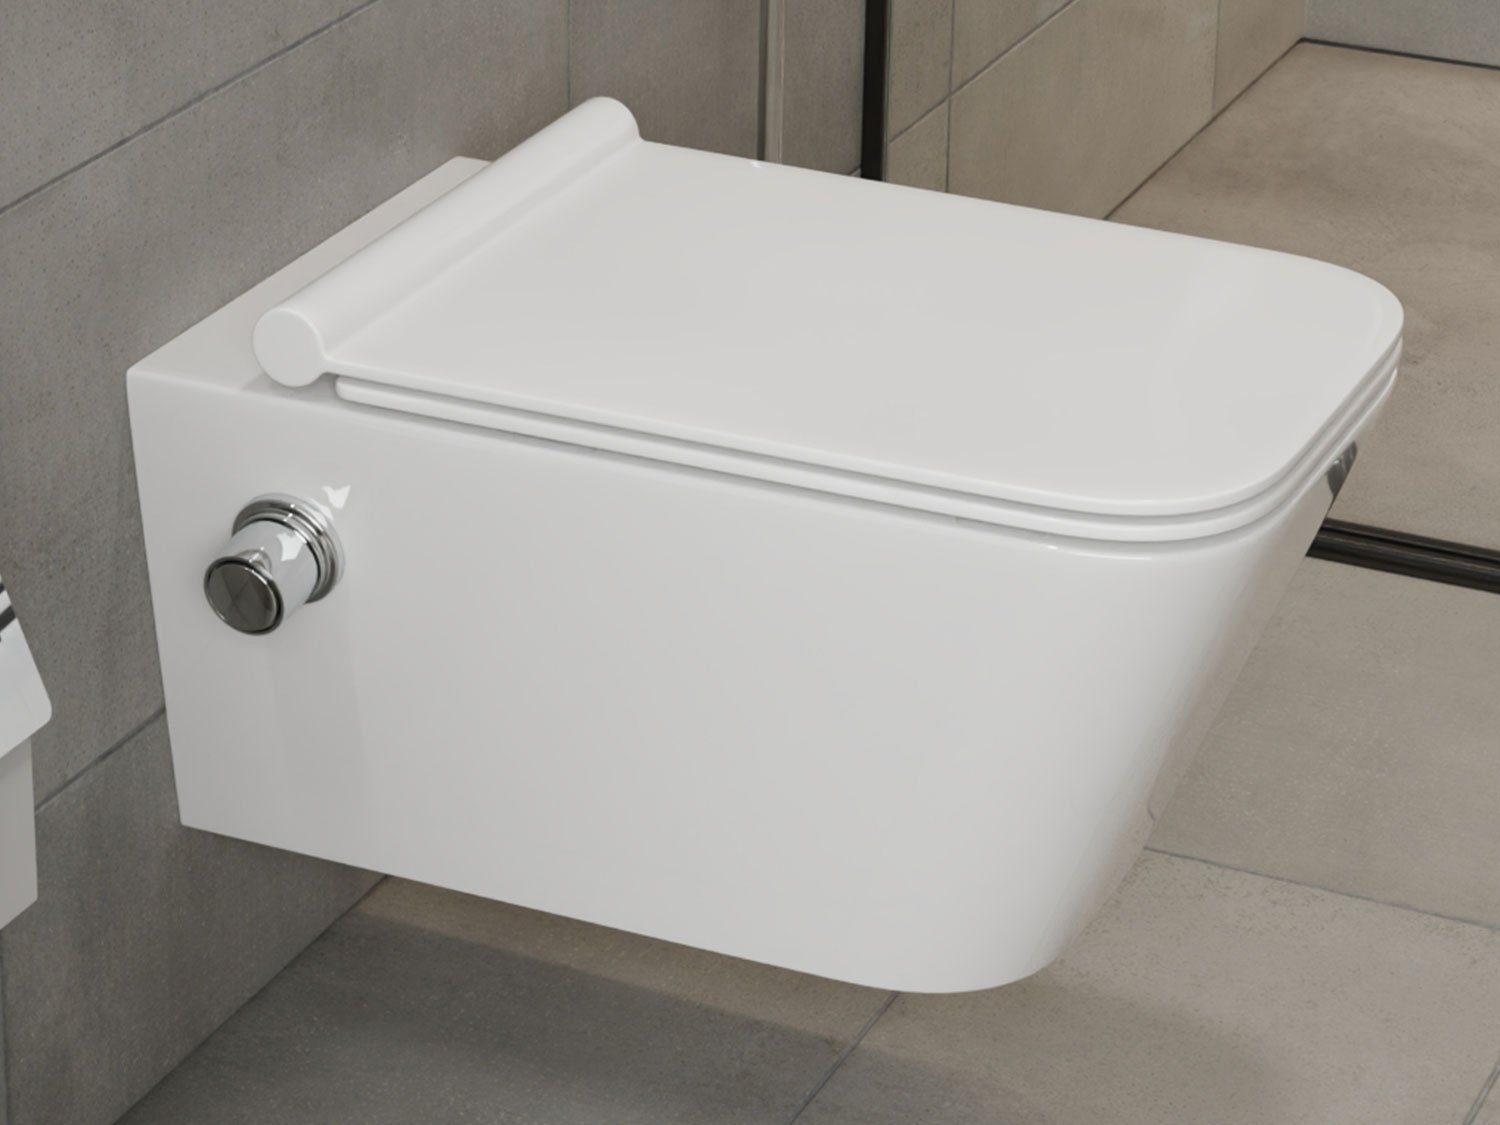 SSWW Tiefspül-WC Design Hänge Dusch-WC Toilette inkl. Ventil & WC-Sitz mit Absenkautom